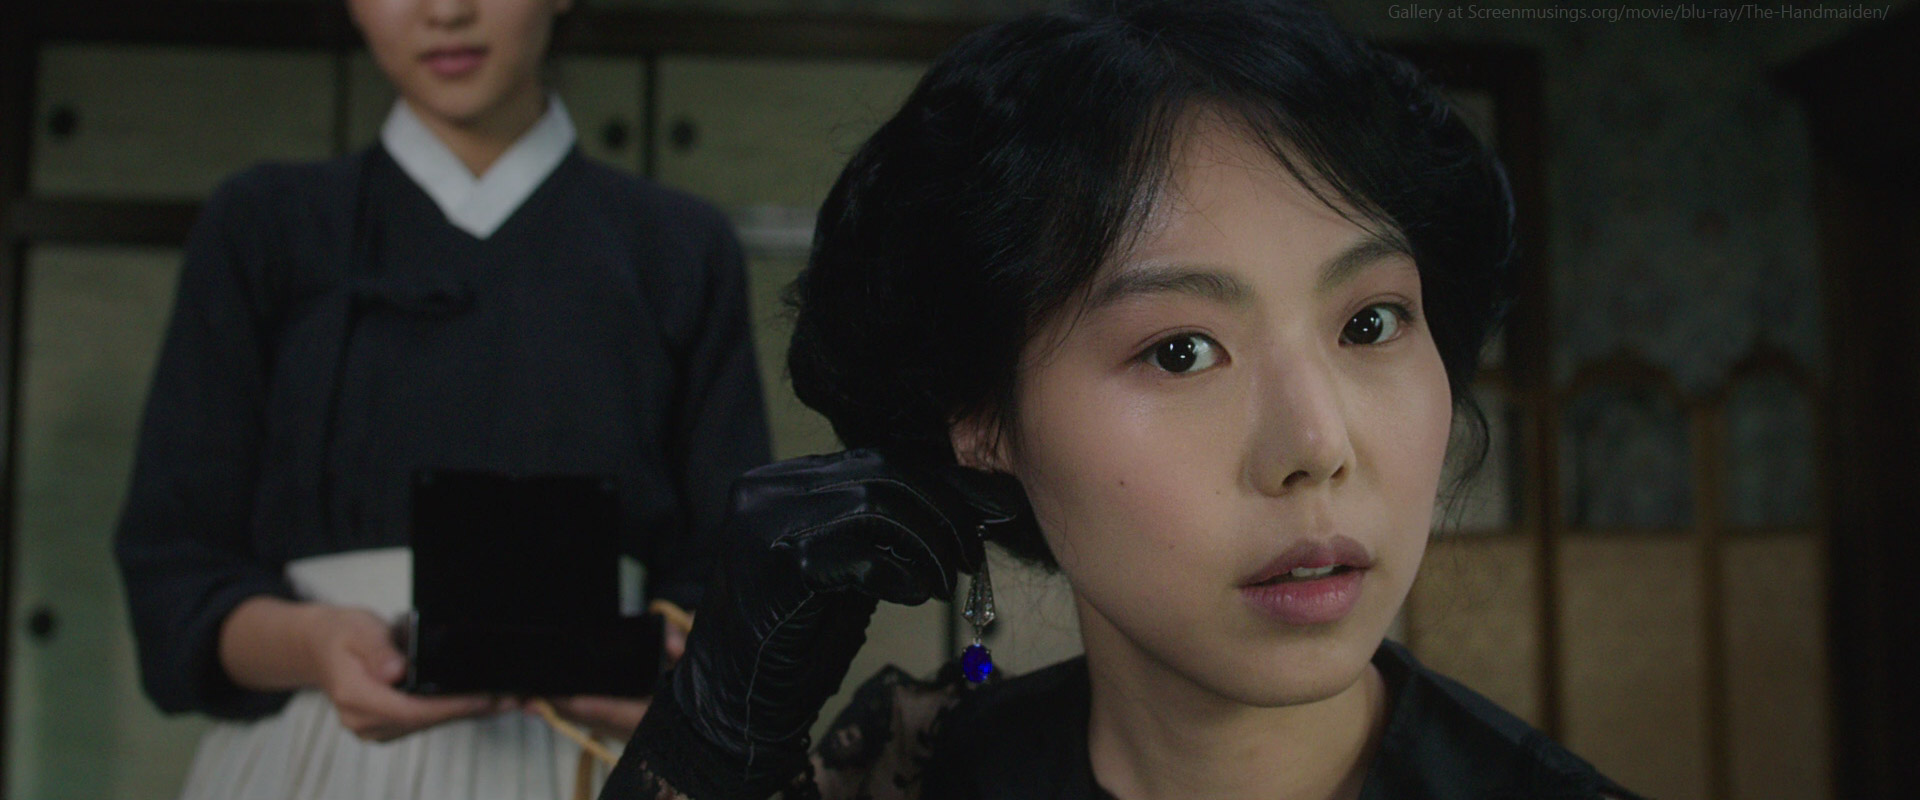 Min-hee Kim in The Handmaiden